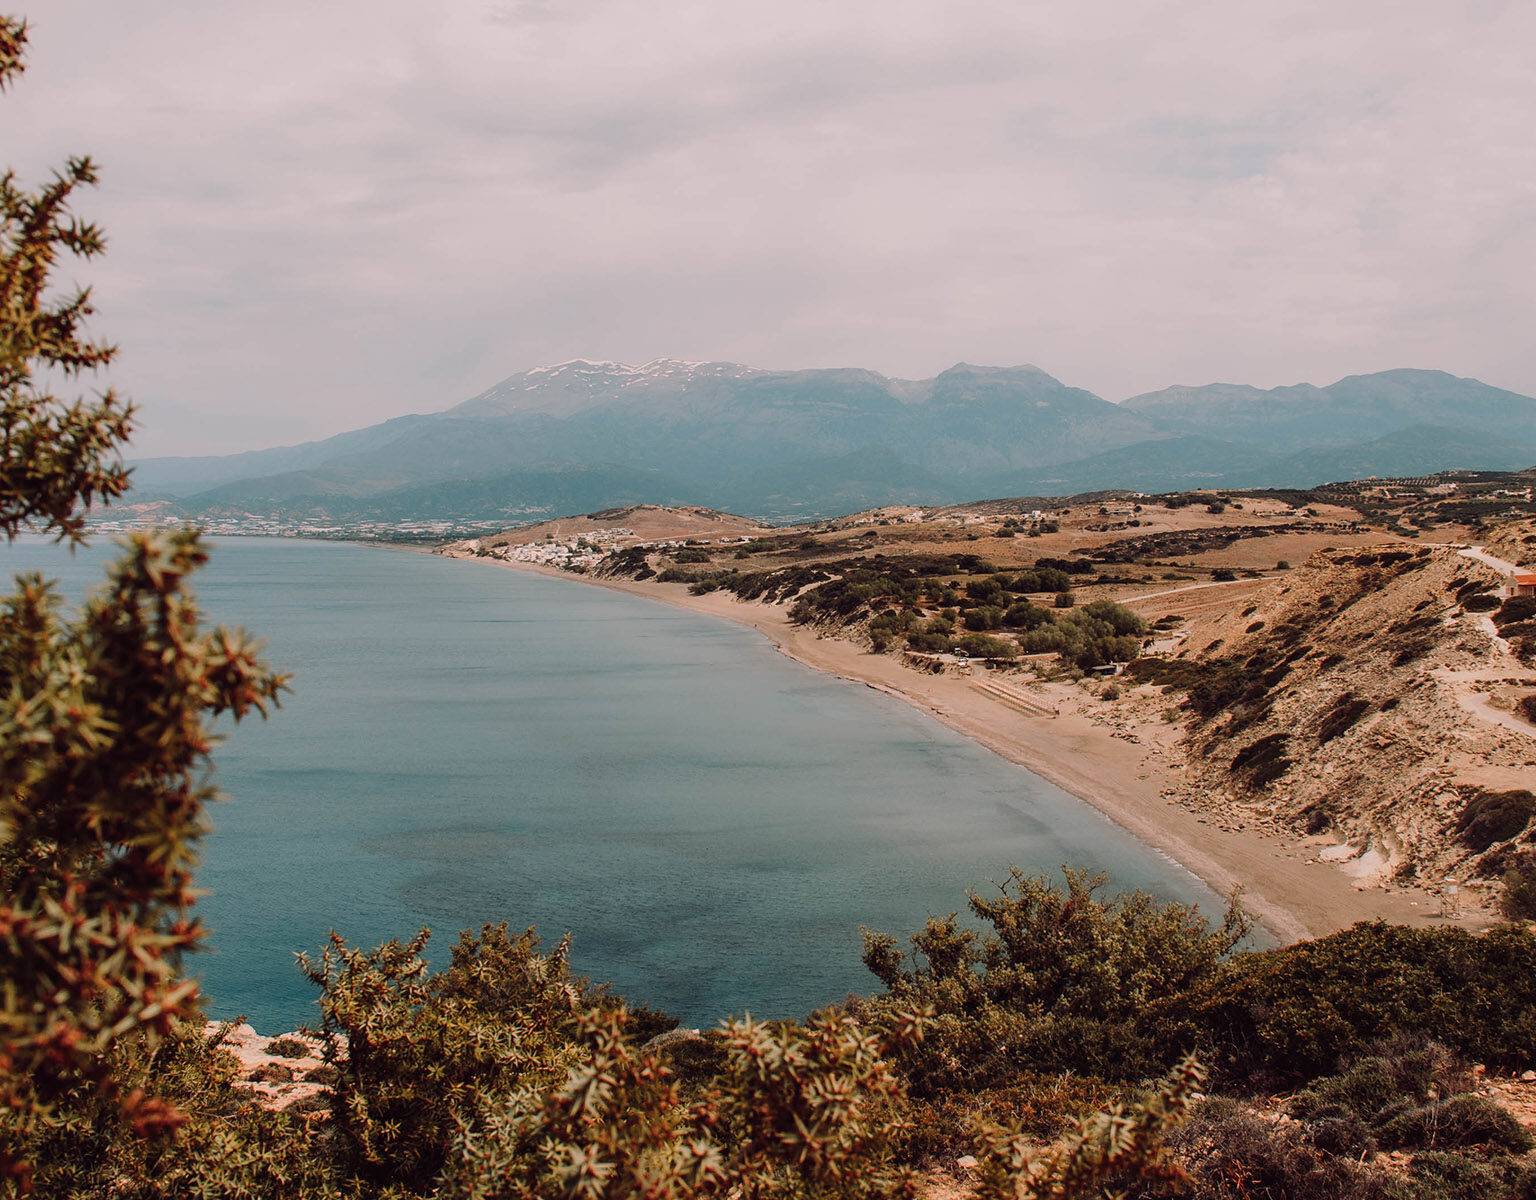 Blick über eine Kuppe Richtung mehr einer Bucht im Meer auf Kreta.